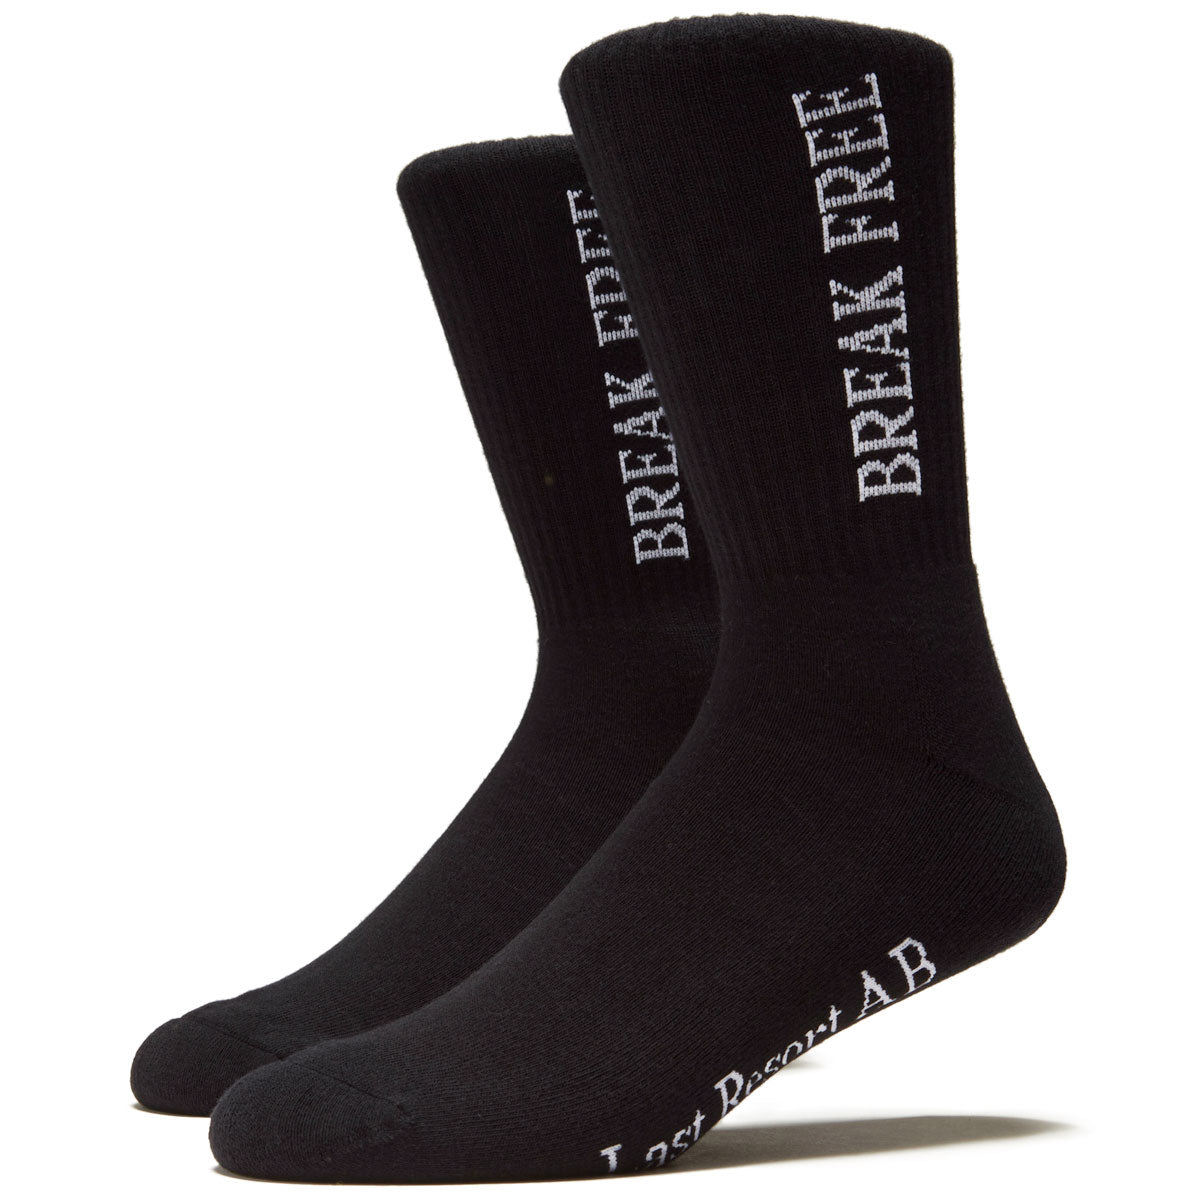 Last Resort AB Break Free Socks - Black image 1